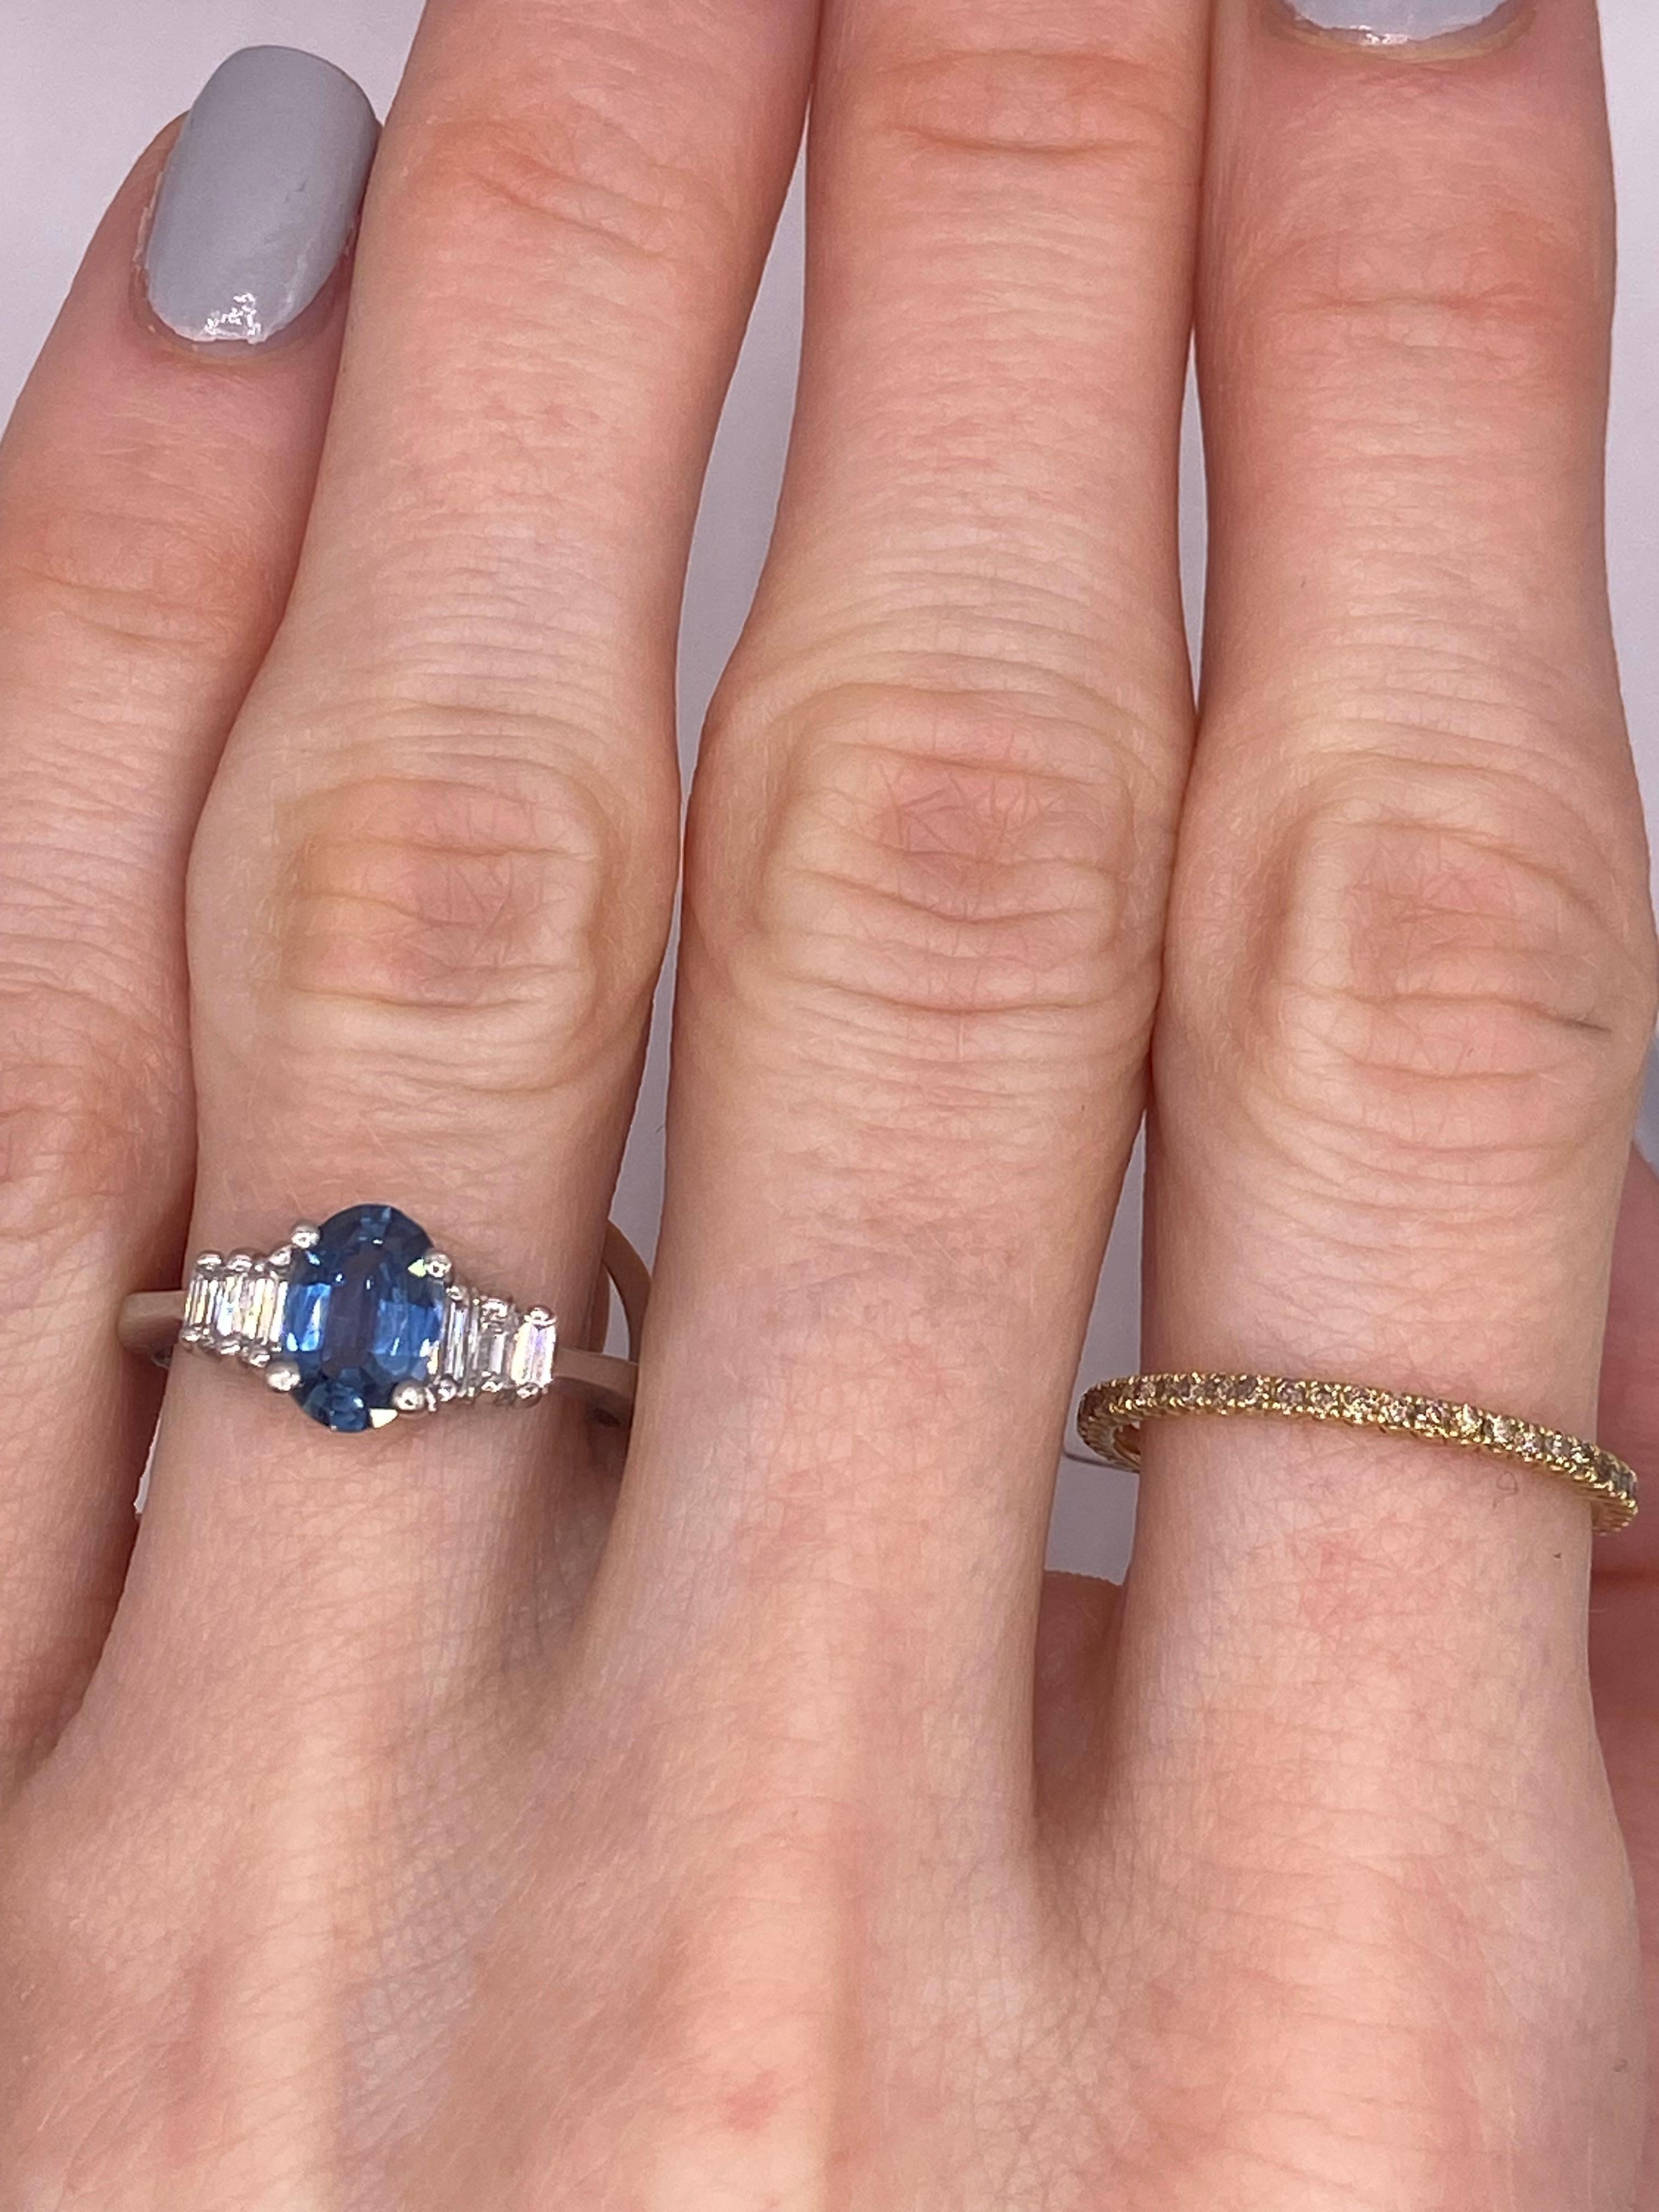 Metall: Platin
Fingergröße: 6.0
(Ring ist Größe 6.0, aber auf Anfrage auch größer)

Anzahl von ovalen Saphiren: 1
Karatgewicht: 0,94ctw
Steingröße: 7,7 x 5,3 mm

Anzahl der Baguette-Diamanten: 6
Karatgewicht: 0,21ctw